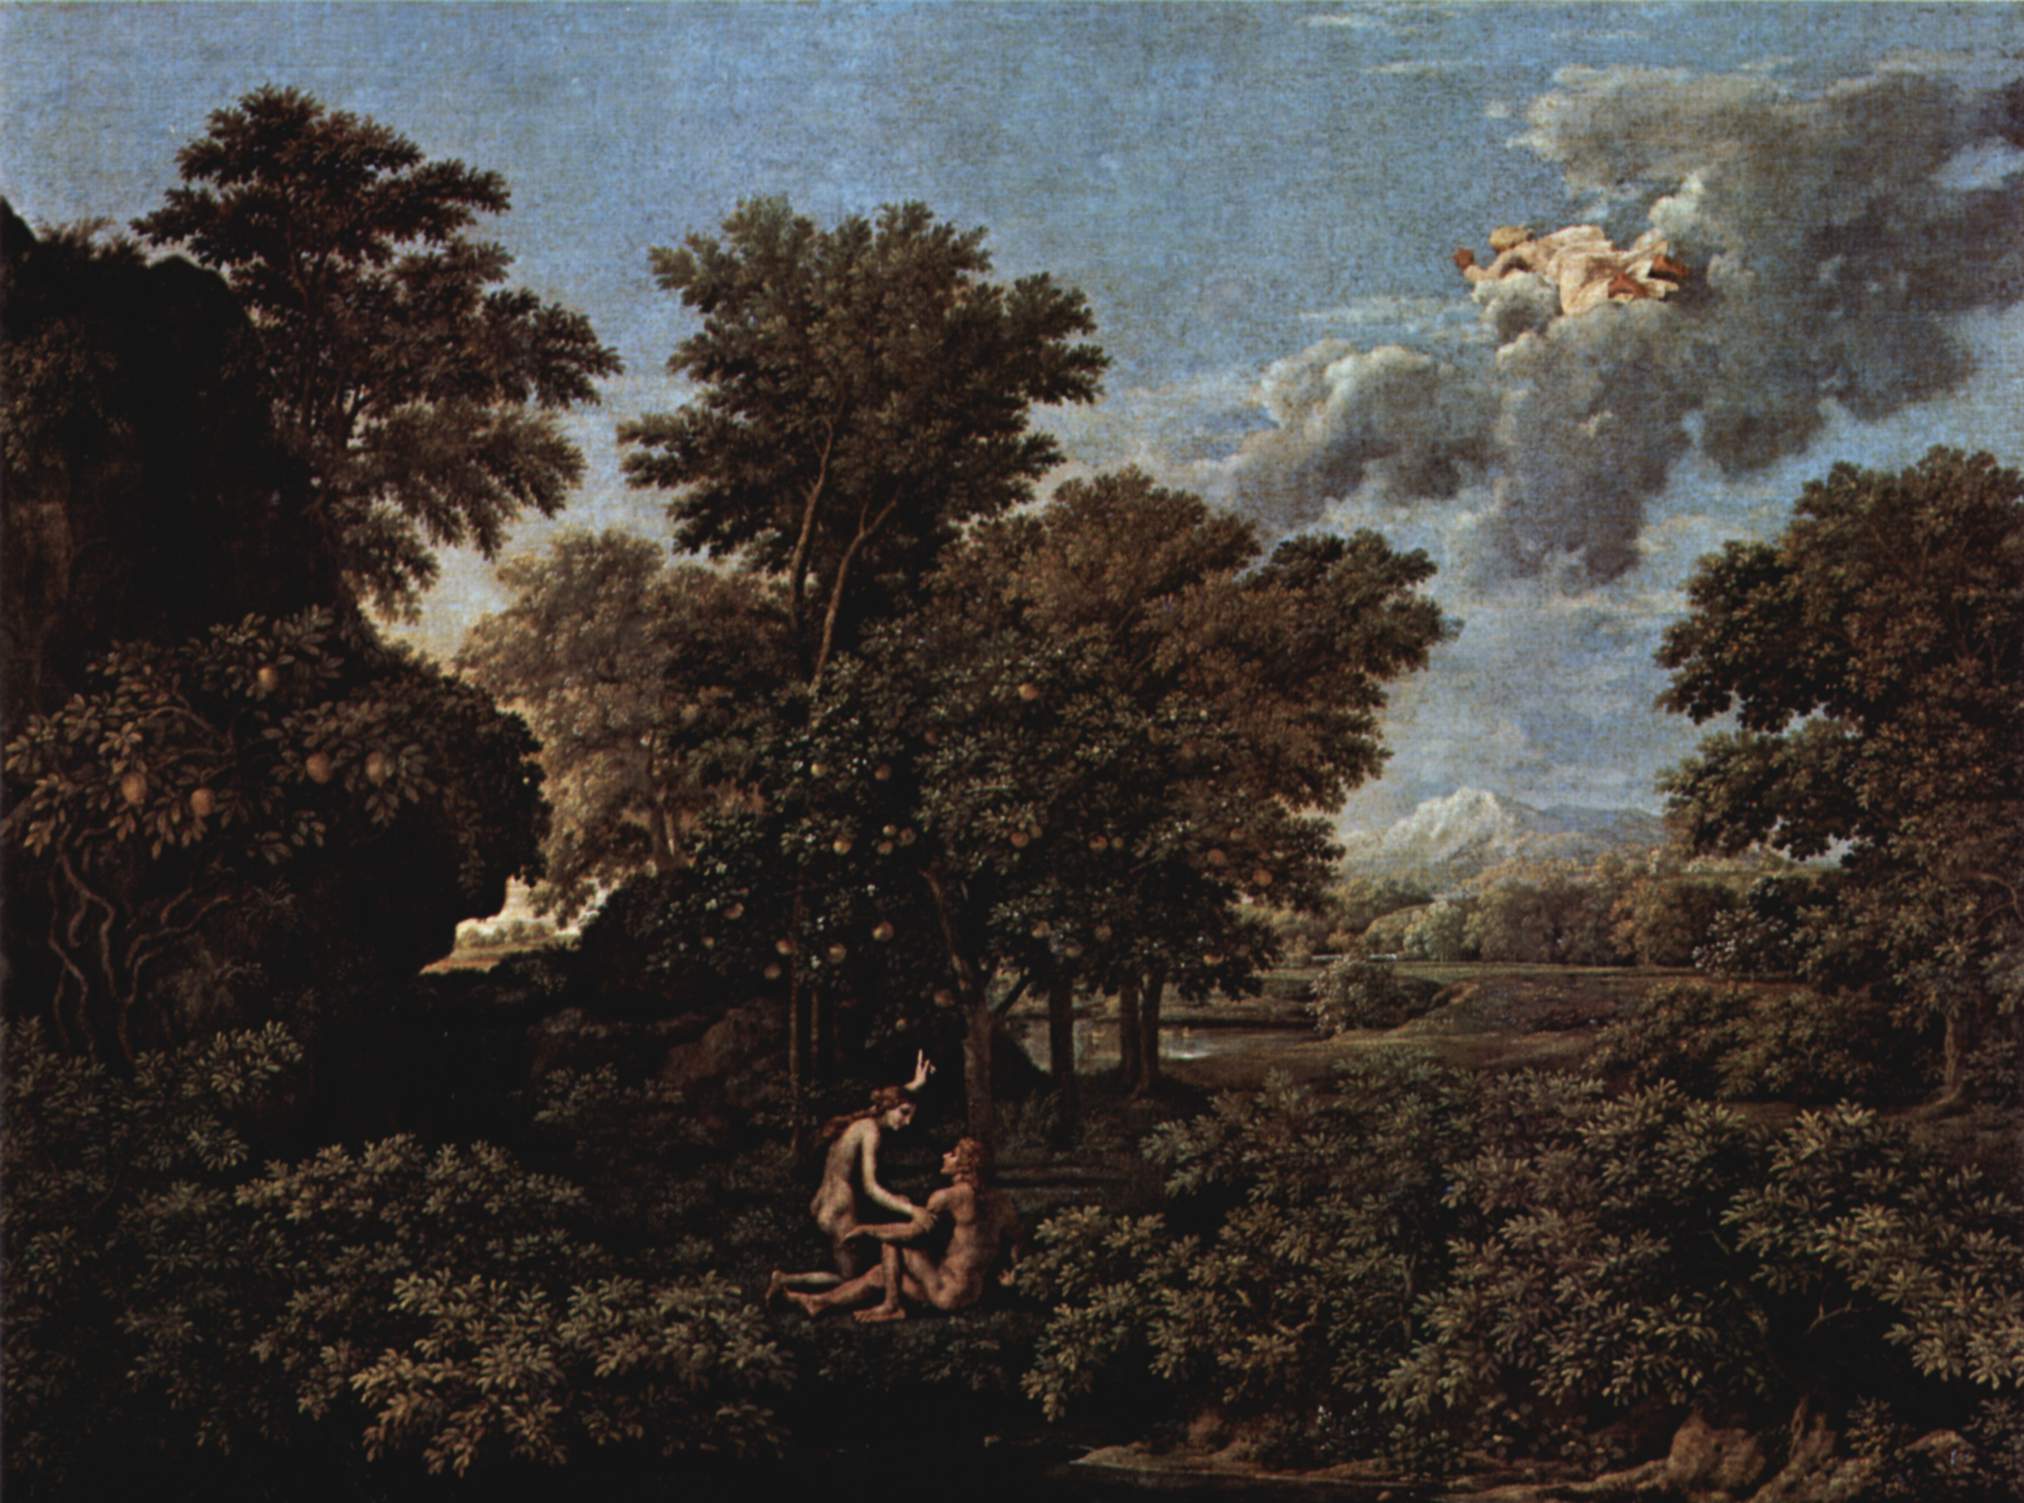 La primavera  (El paraíso terrenal) by Nicolas Poussin - 1664 - 117 x 160 cm Musée du Louvre